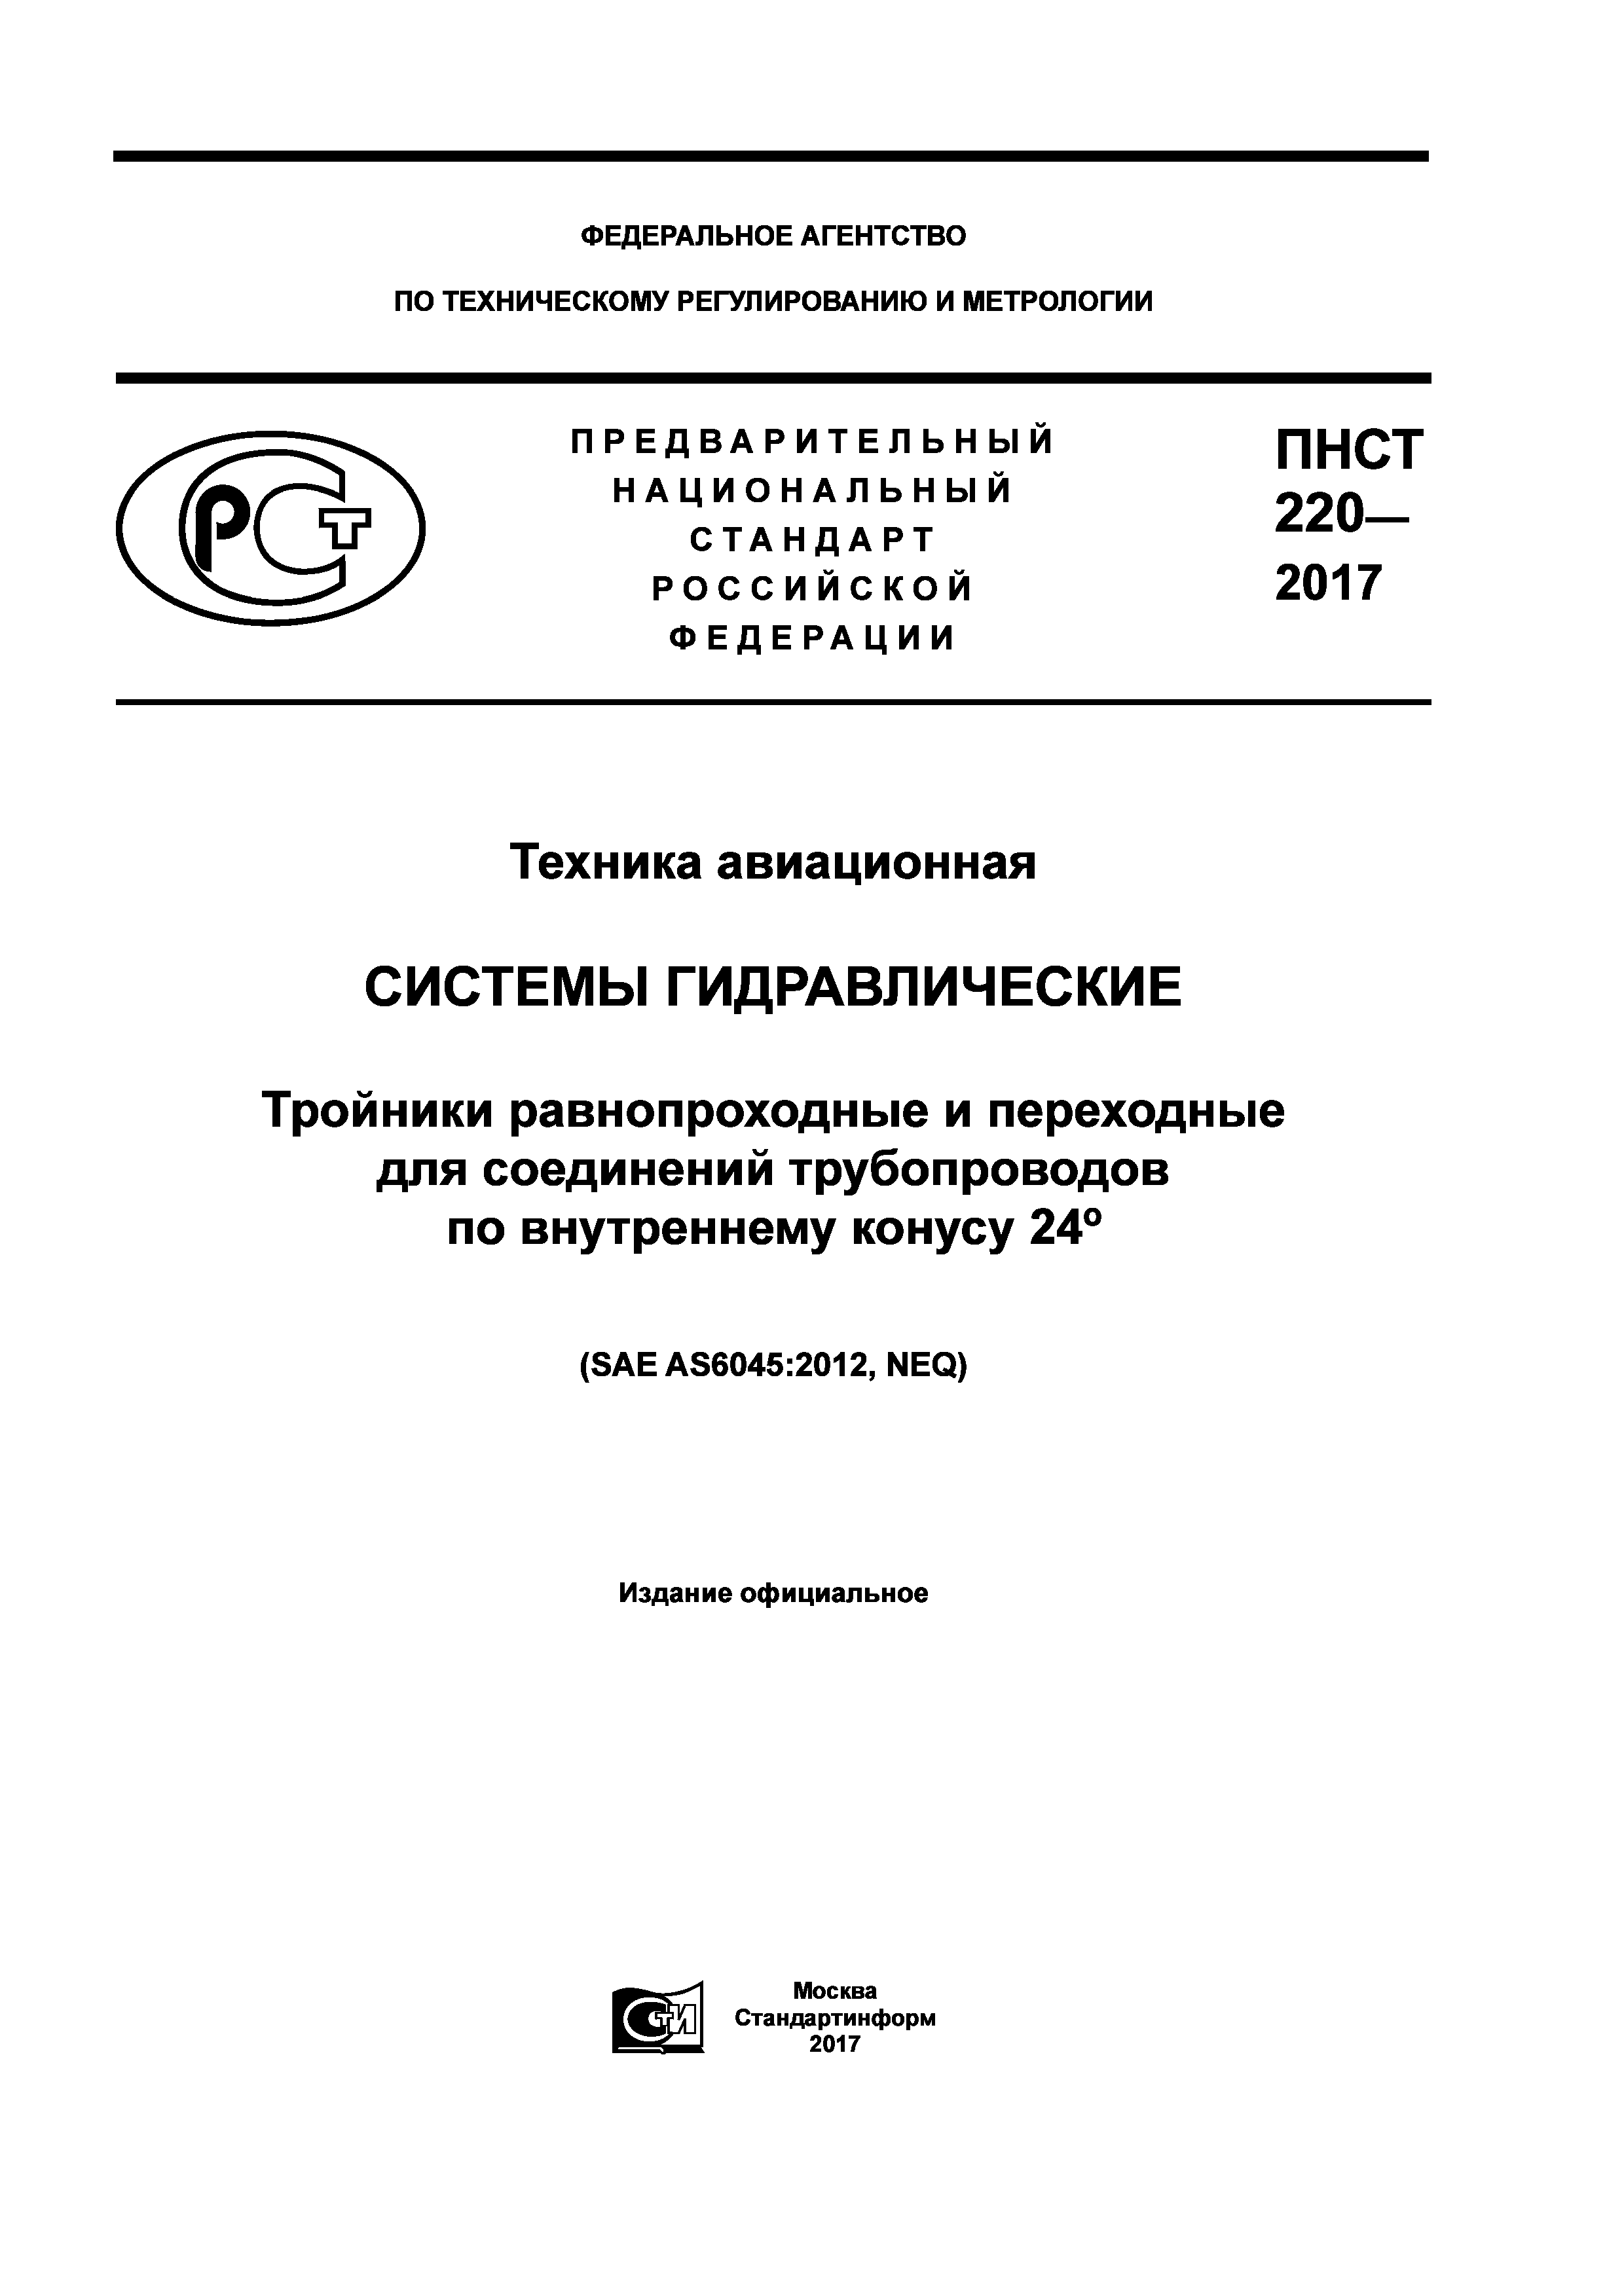 ПНСТ 220-2017